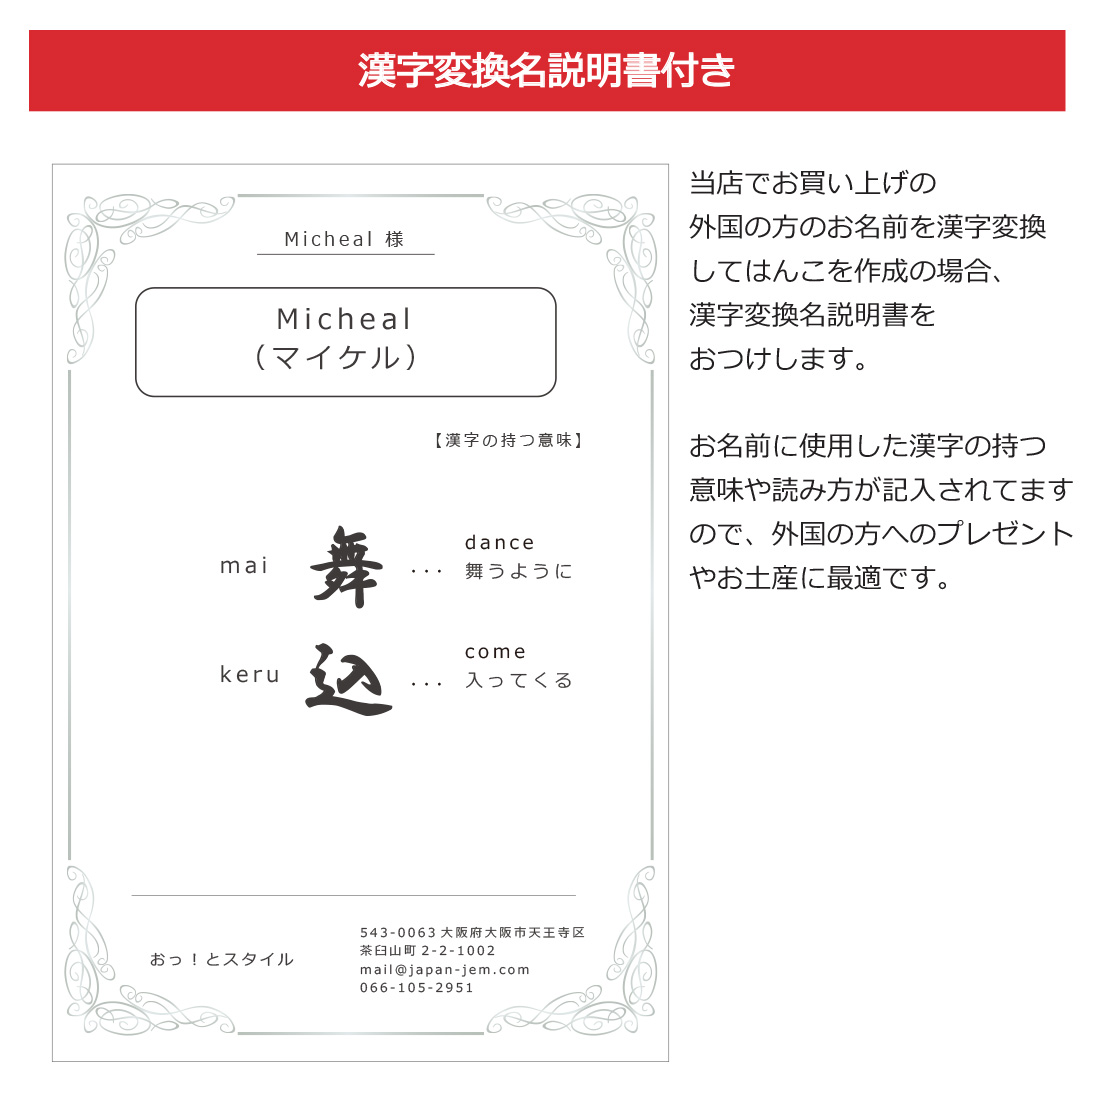 漢字変換をご希望の場合漢字変換名説明書付き。